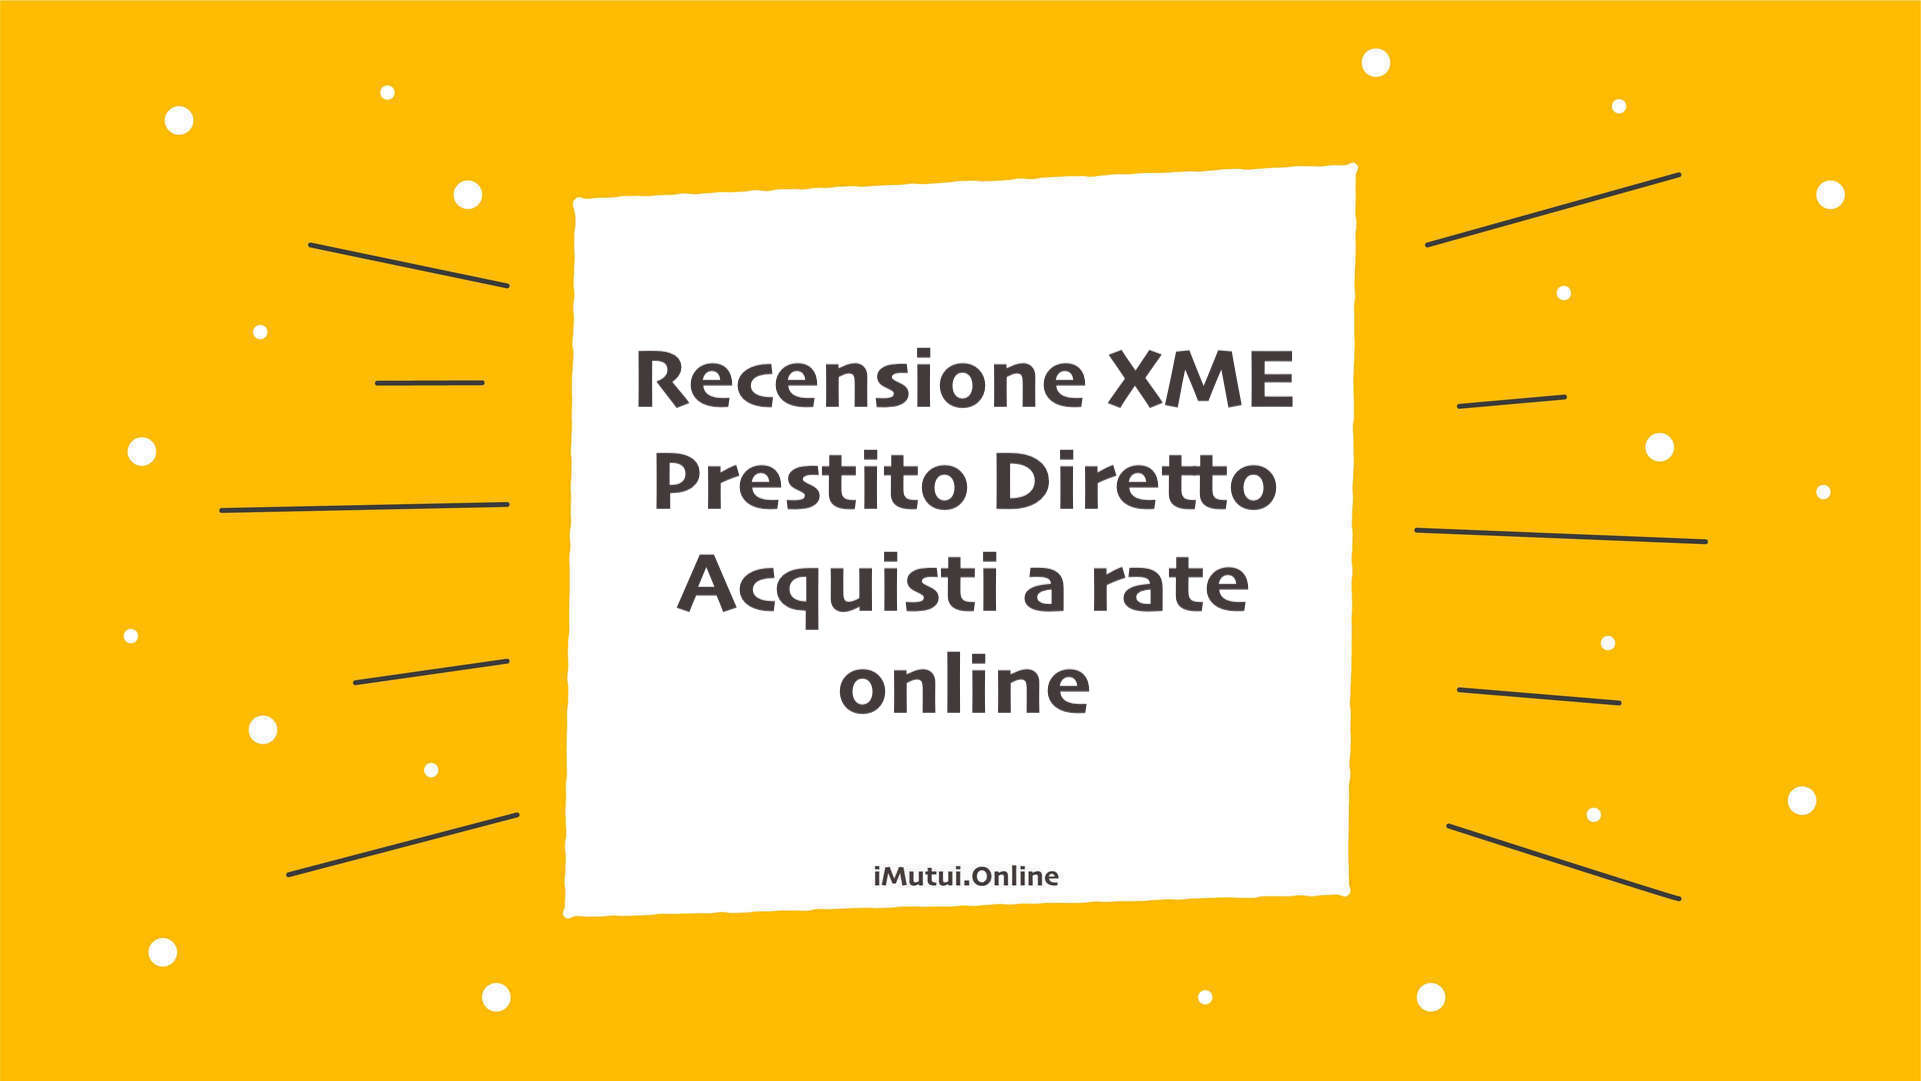 Recensione XME Prestito Diretto Acquisti a rate online